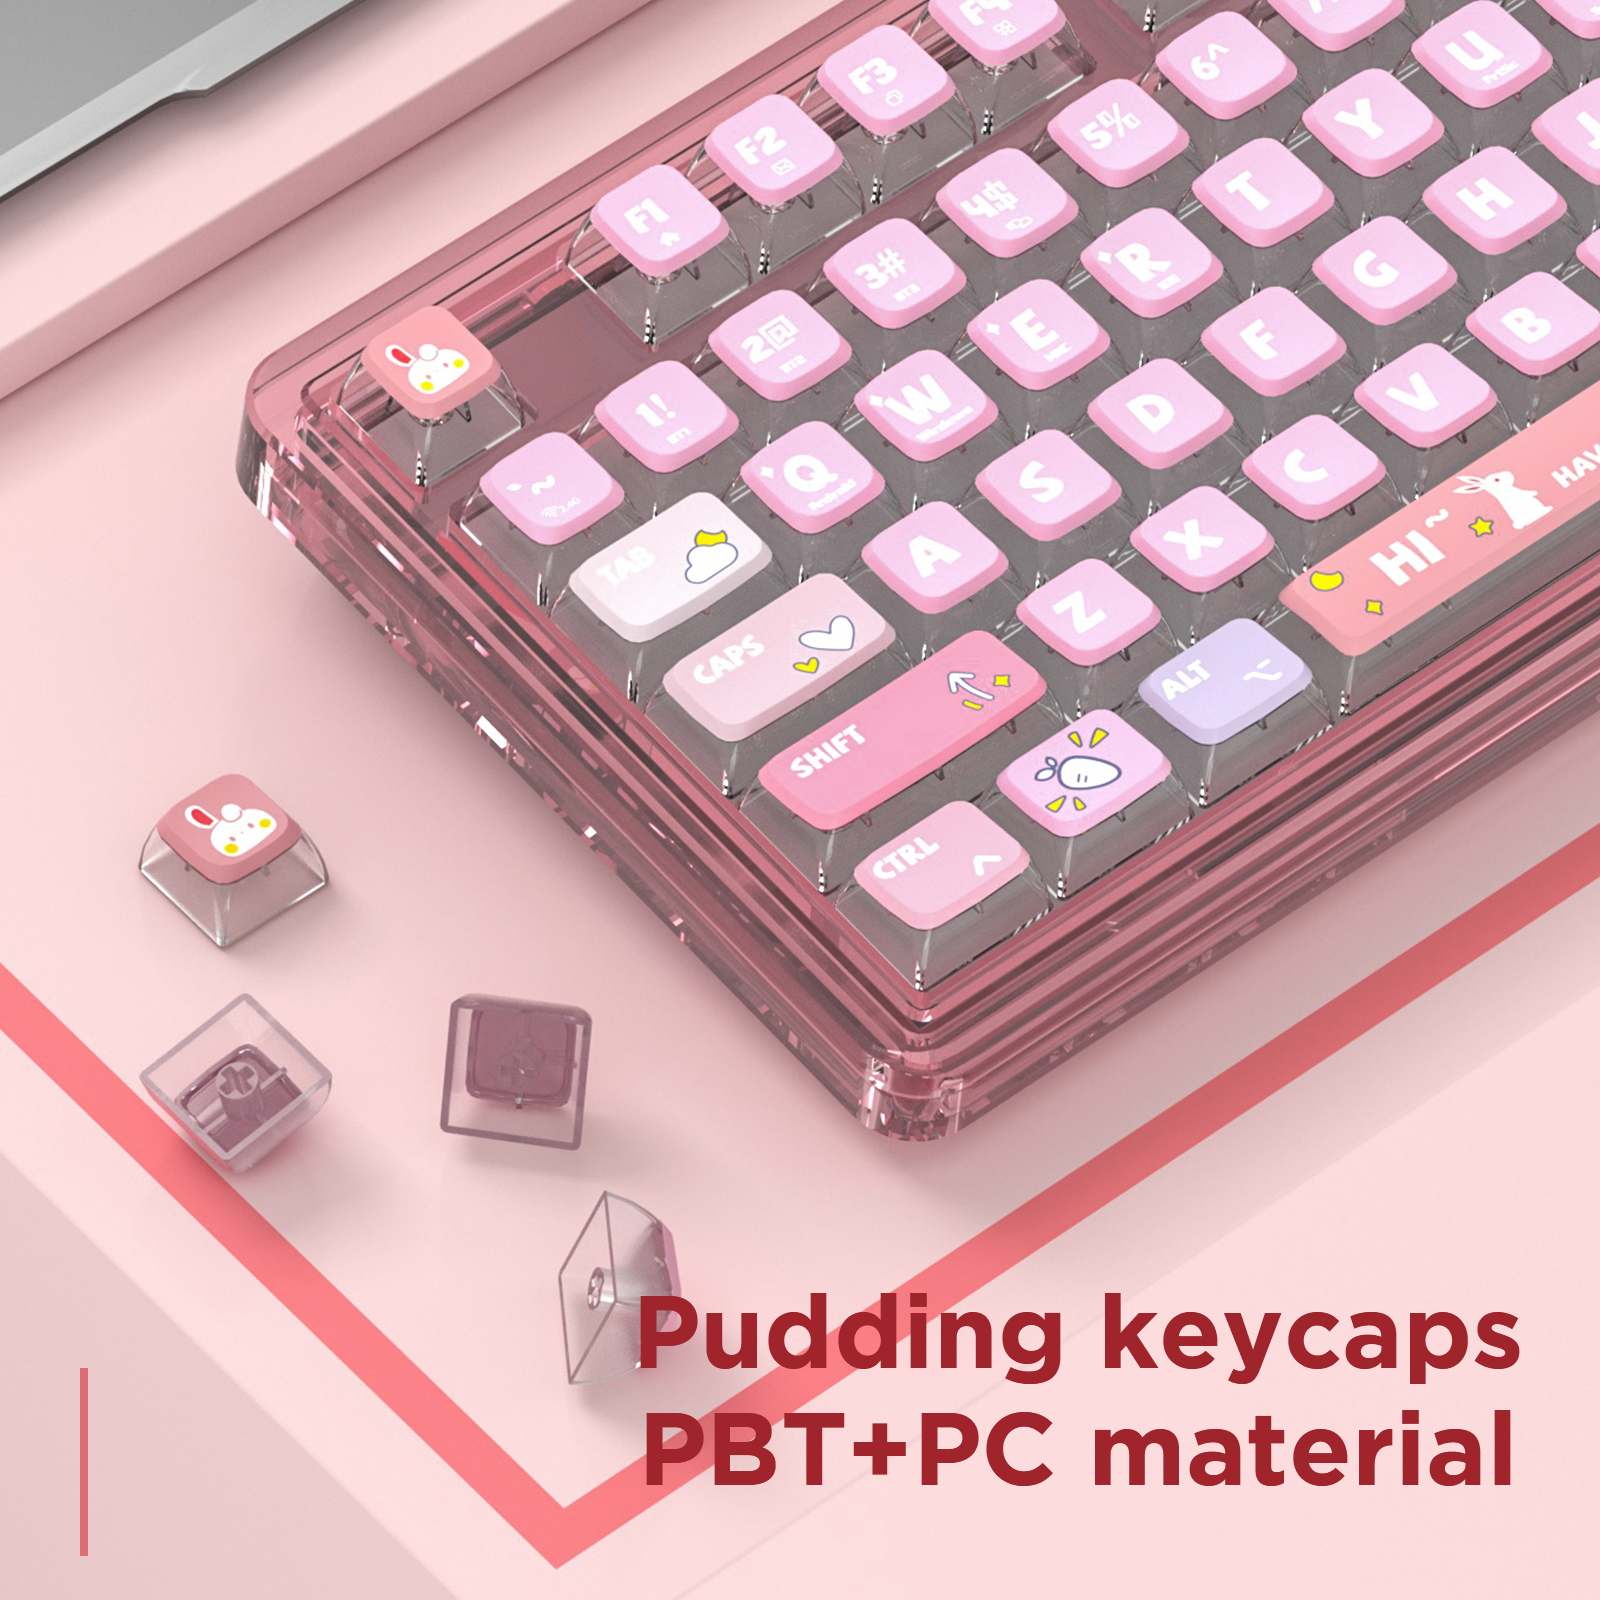 AULA-LEOBOG K81 Gasket Mechanical Keyboard-Pink(图3)